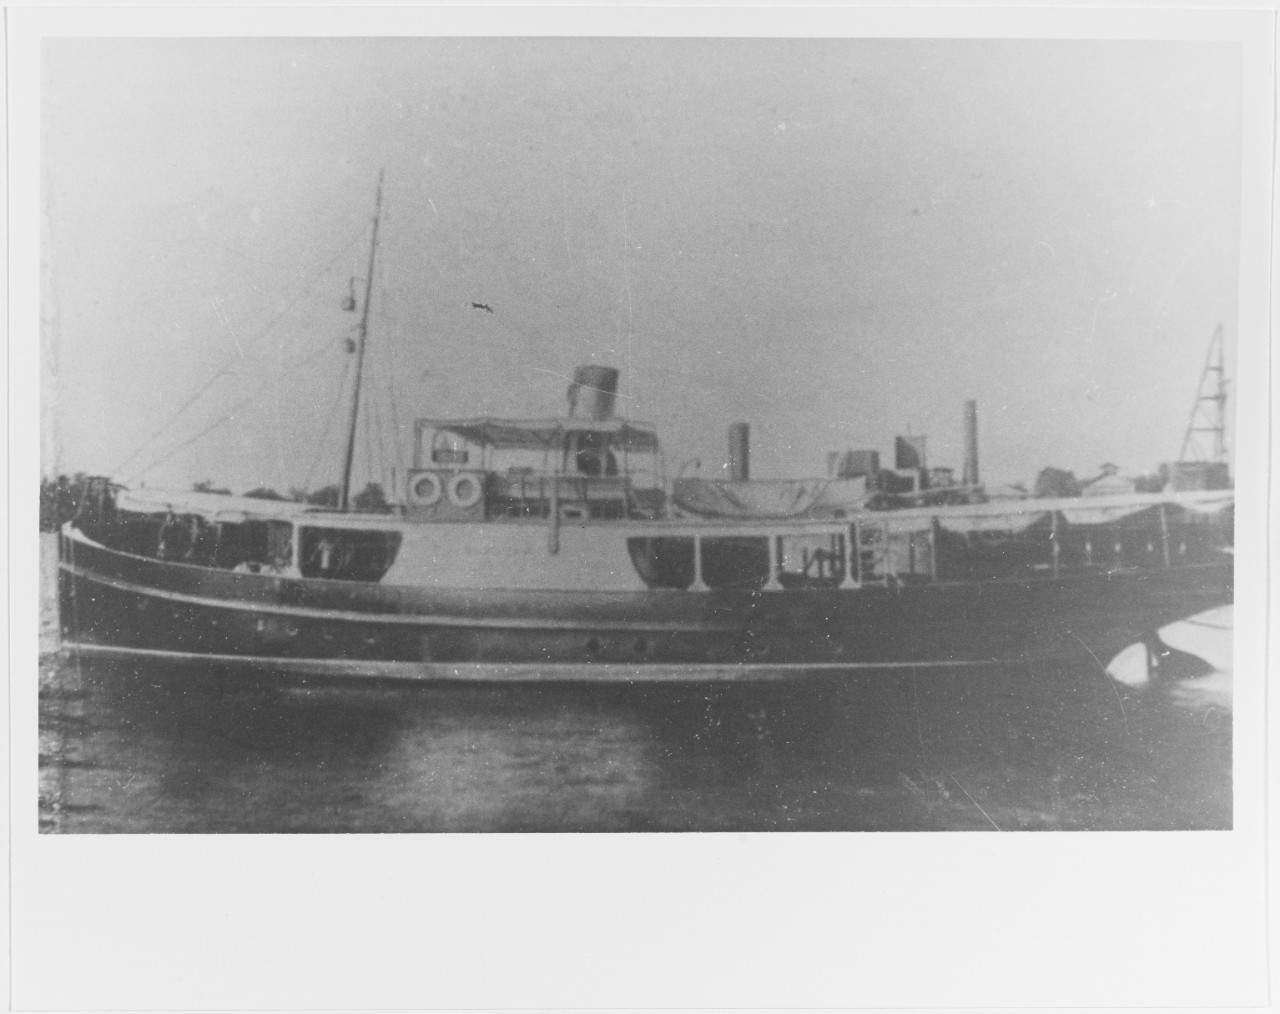 NIKOLAI (Russian mercantile vessel, about 1903)